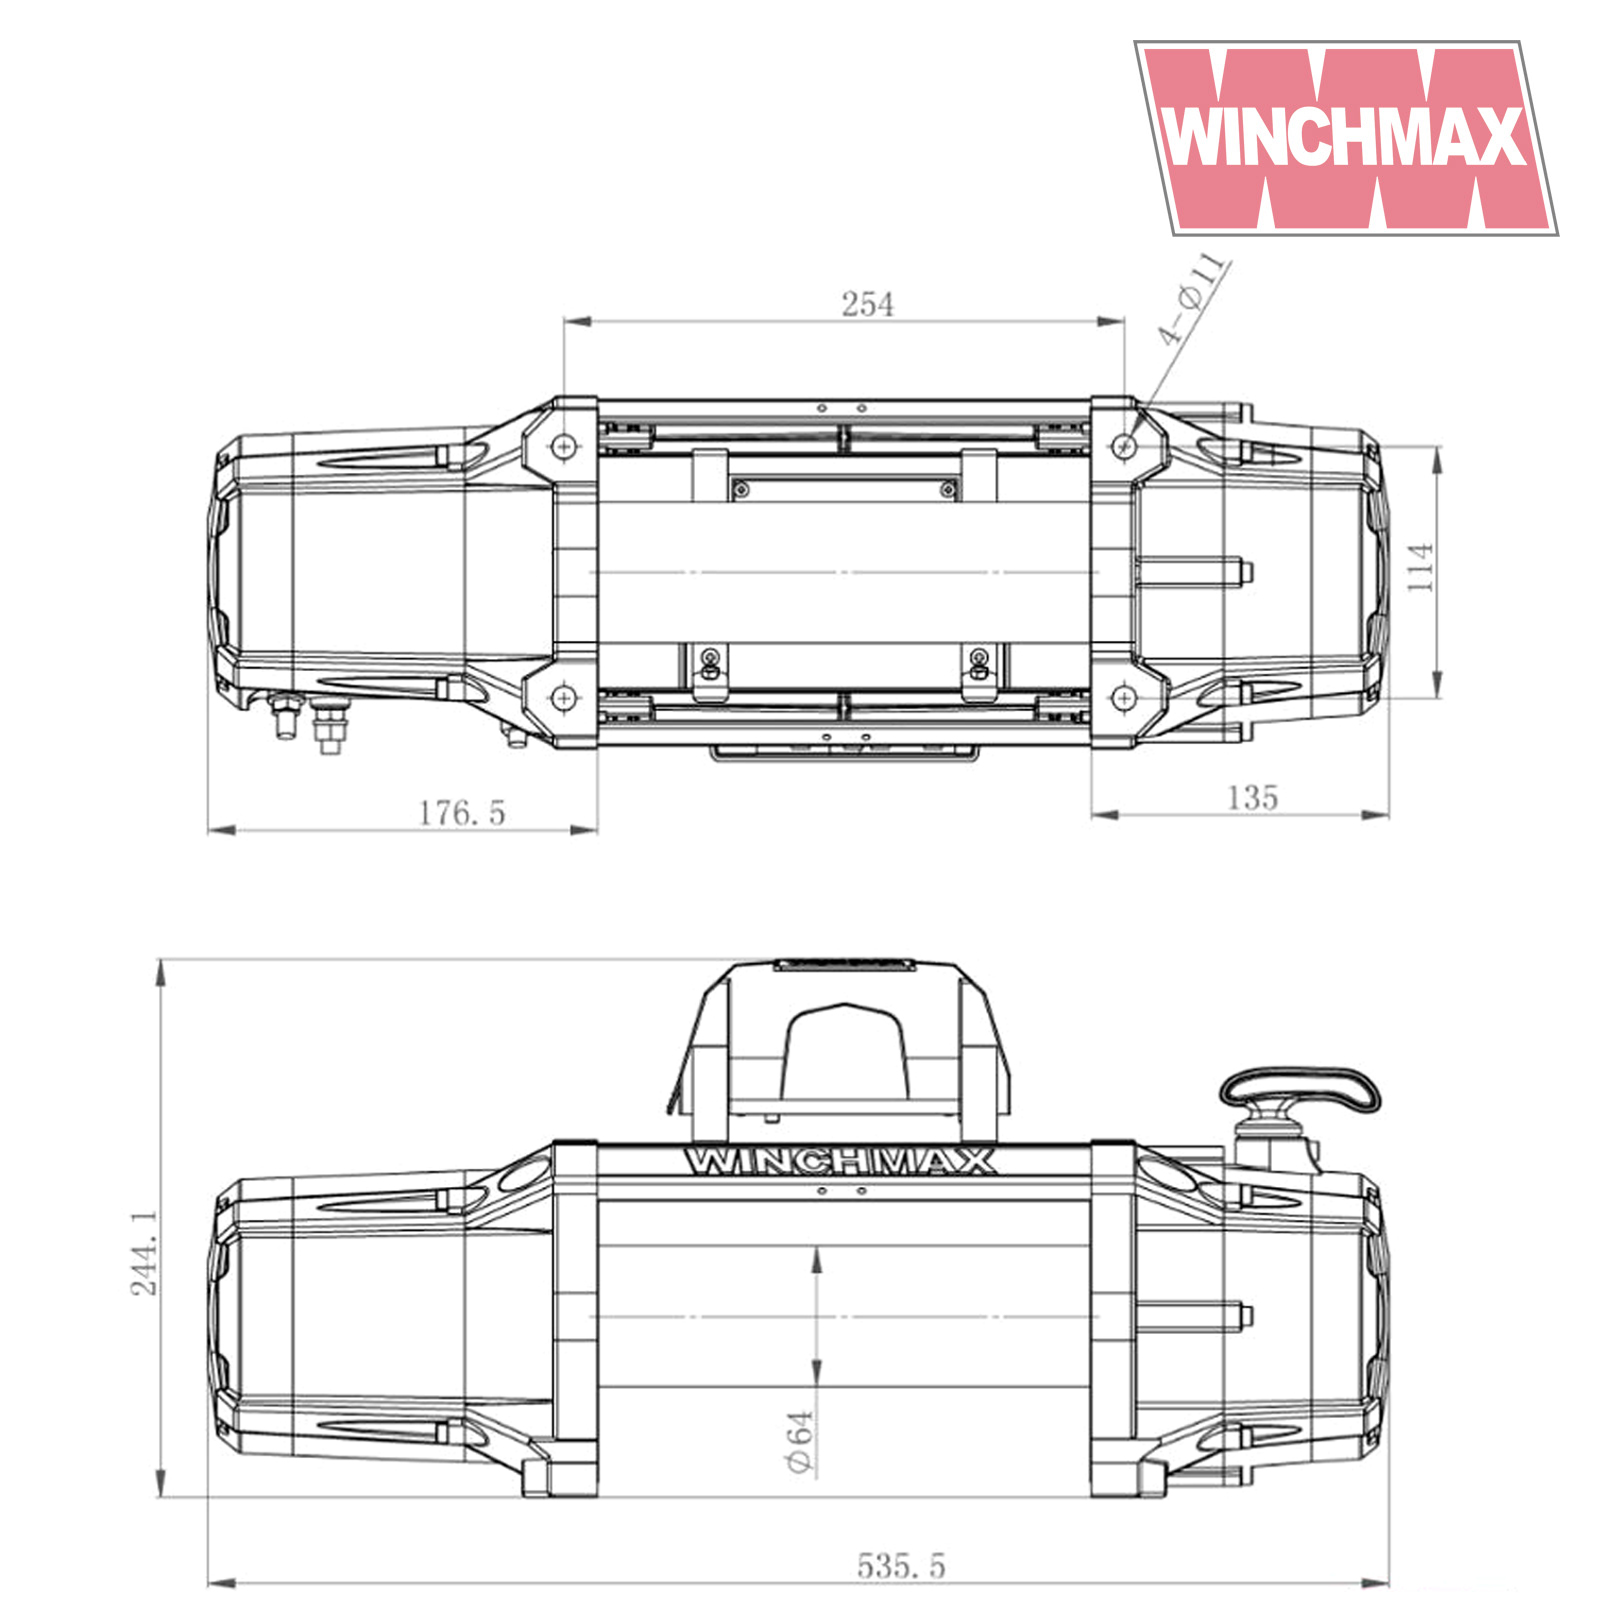 WINCHMAX 13500lb 12v Military Grade Winch Spec